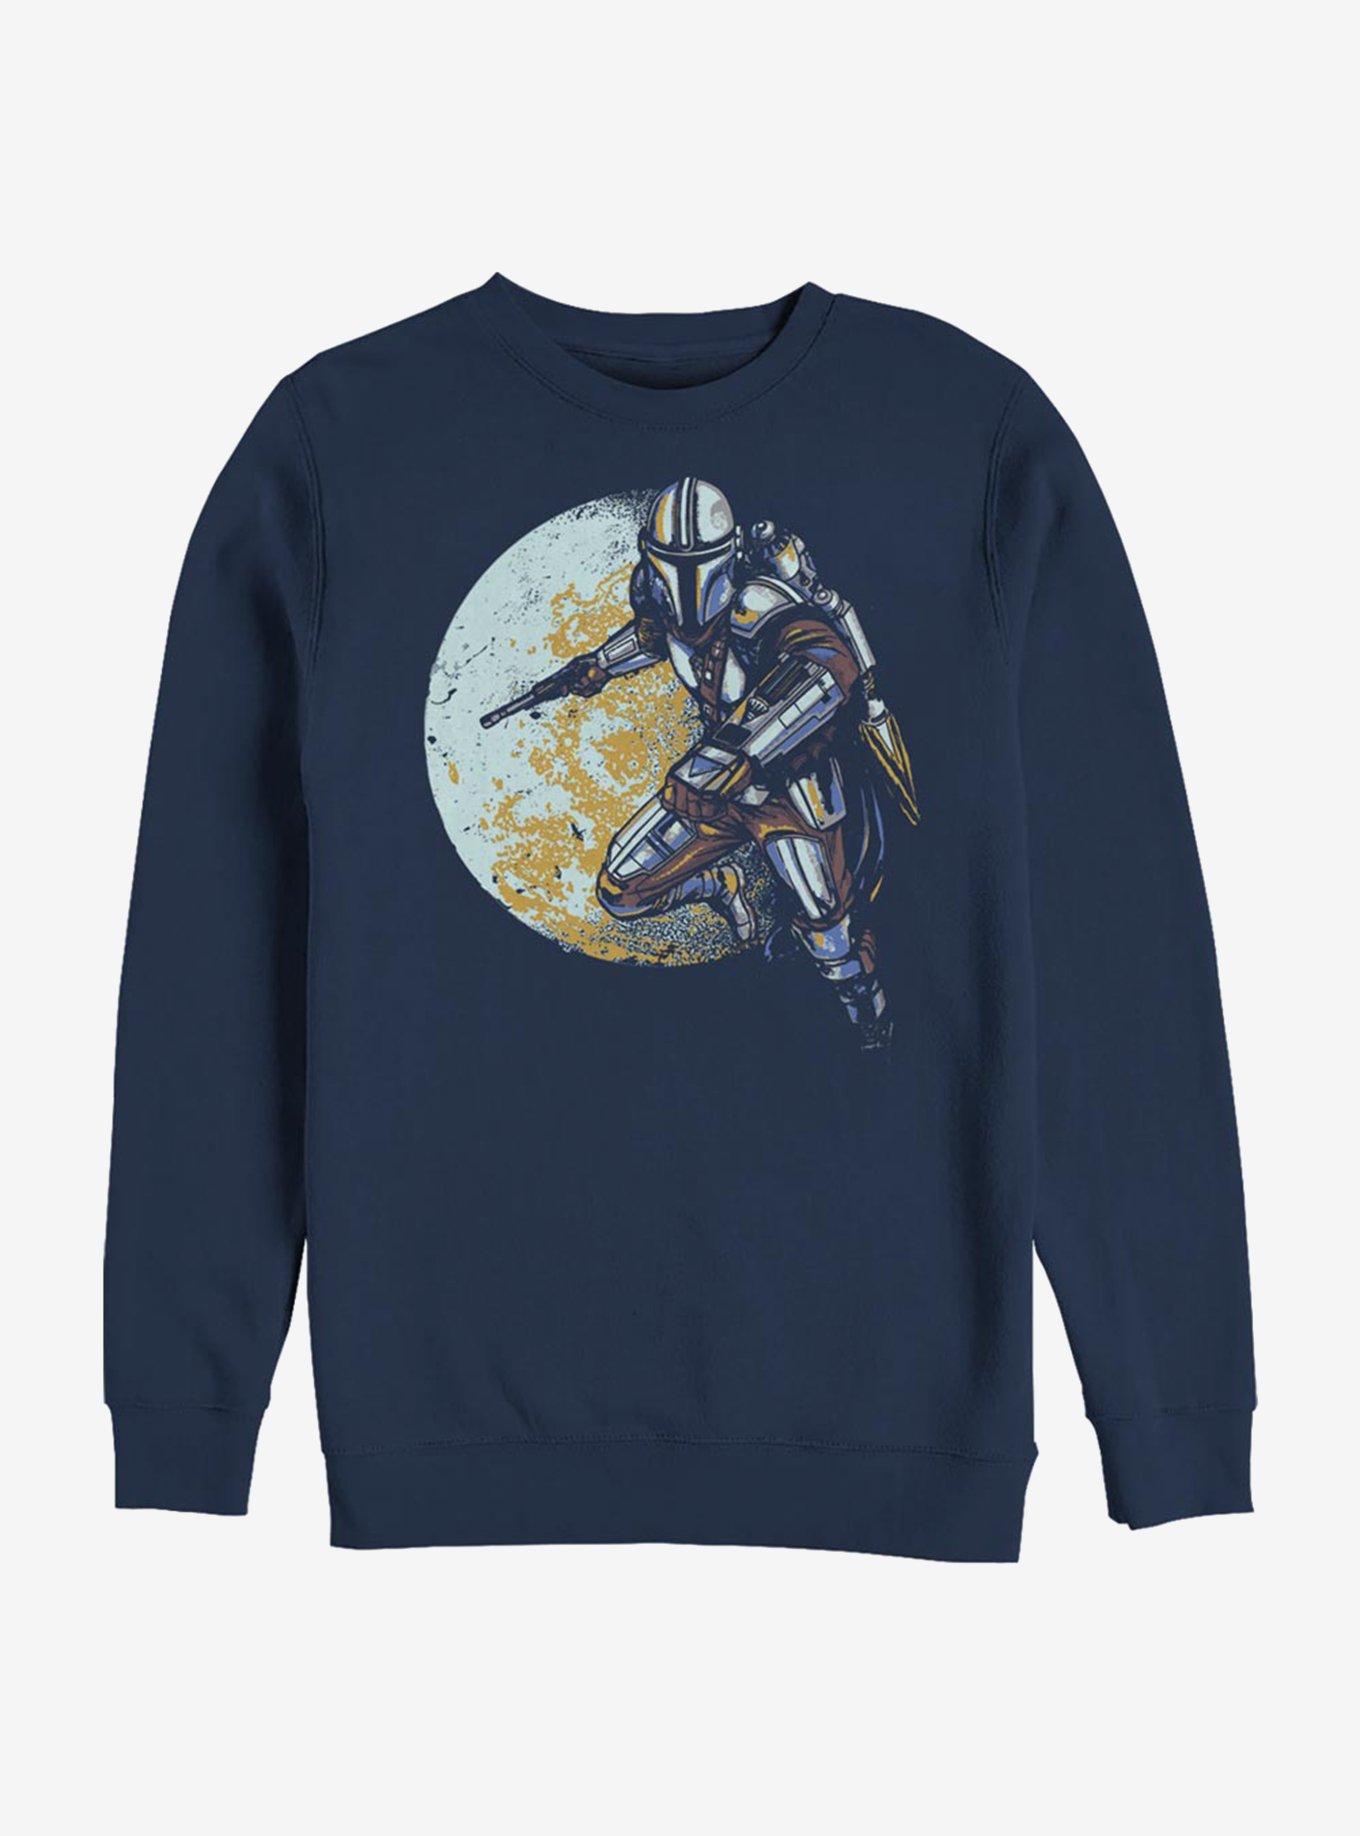 Star Wars The Mandalorian Moon-dalorian Sweatshirt, , hi-res